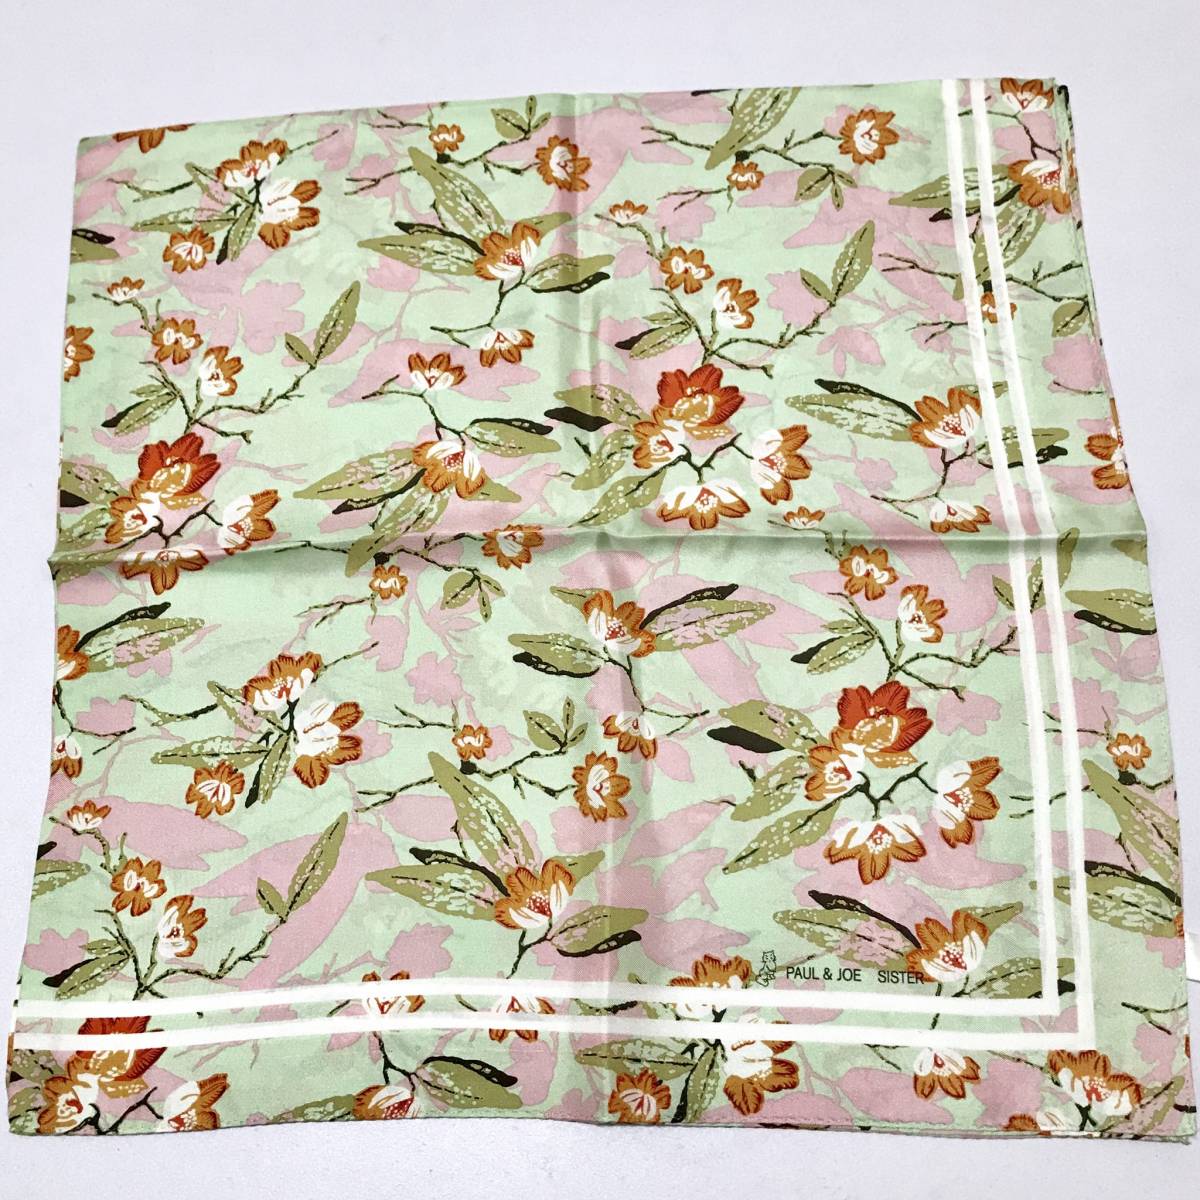 324 новый товар [ paul (pole) & Joe PAUL&JOE SISTER ] сделано в Японии шелк 100% большой размер шарф цветочный принт зеленый шелк meido in Japan бесплатная доставка 